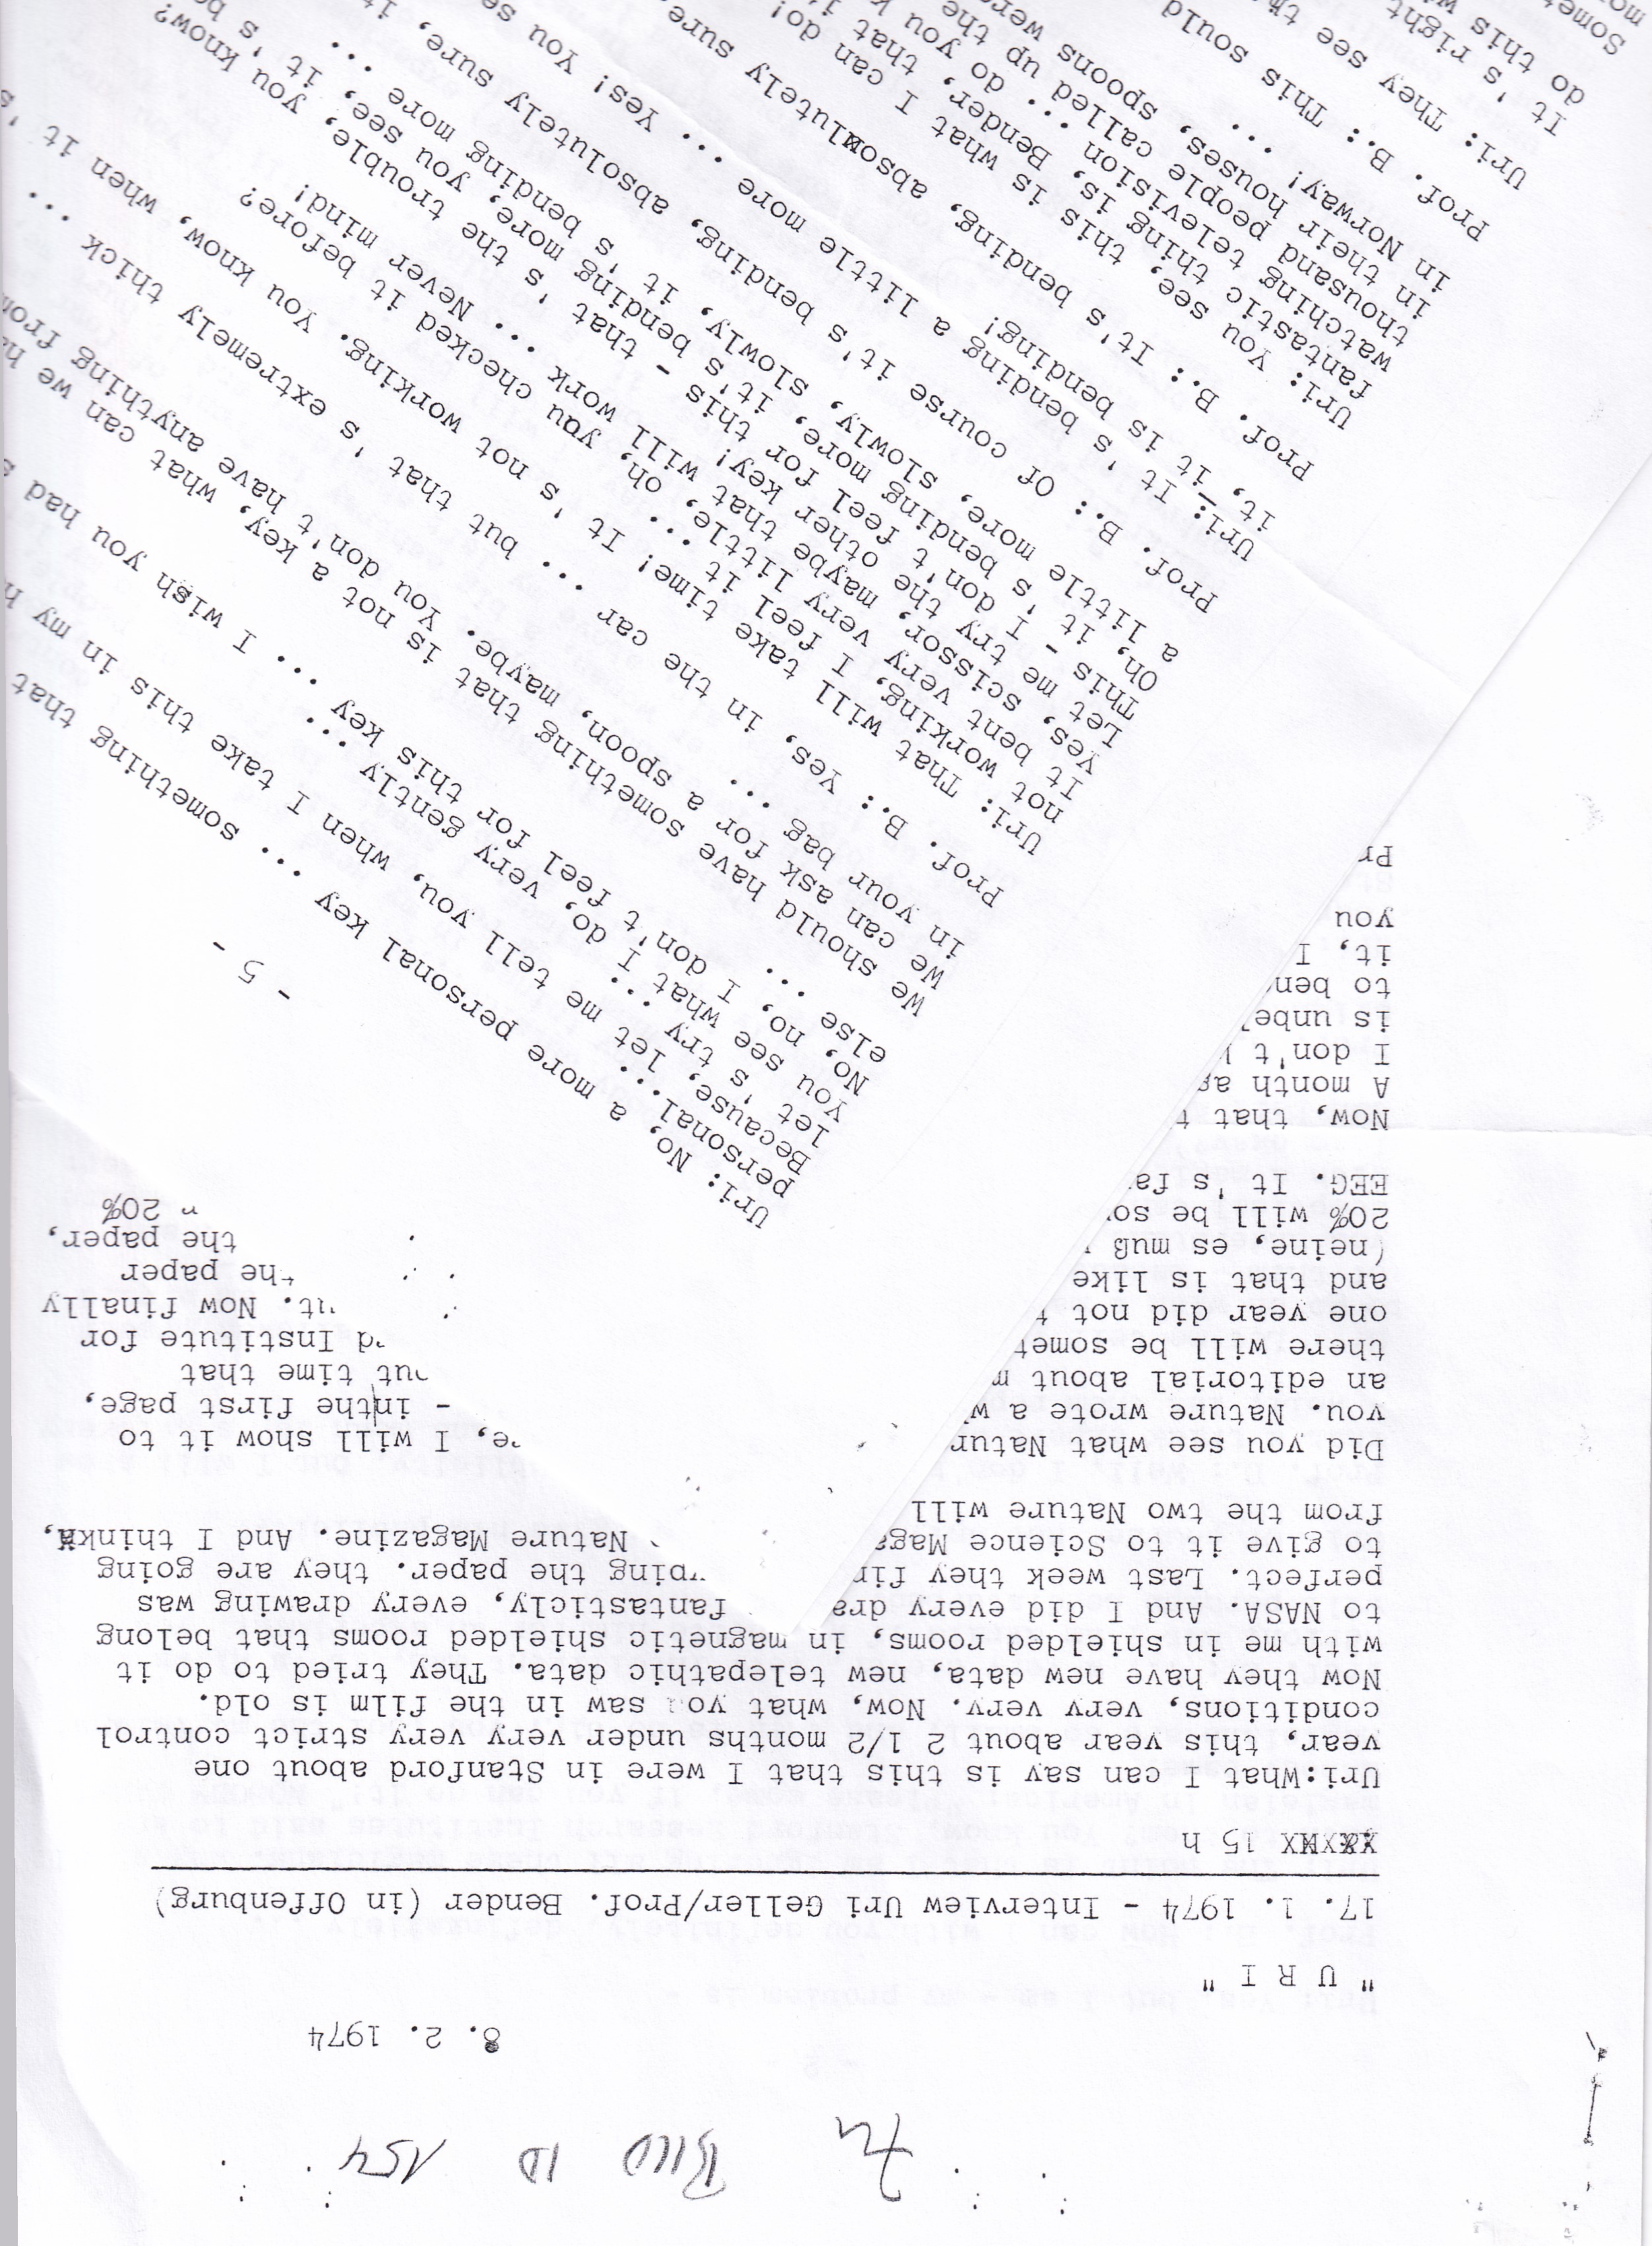 Transkripts eines Gesprächs zwischen
Hans Bender und Uri Geller am 17.1.1974 in Offenburg (Archiv des IGPP)